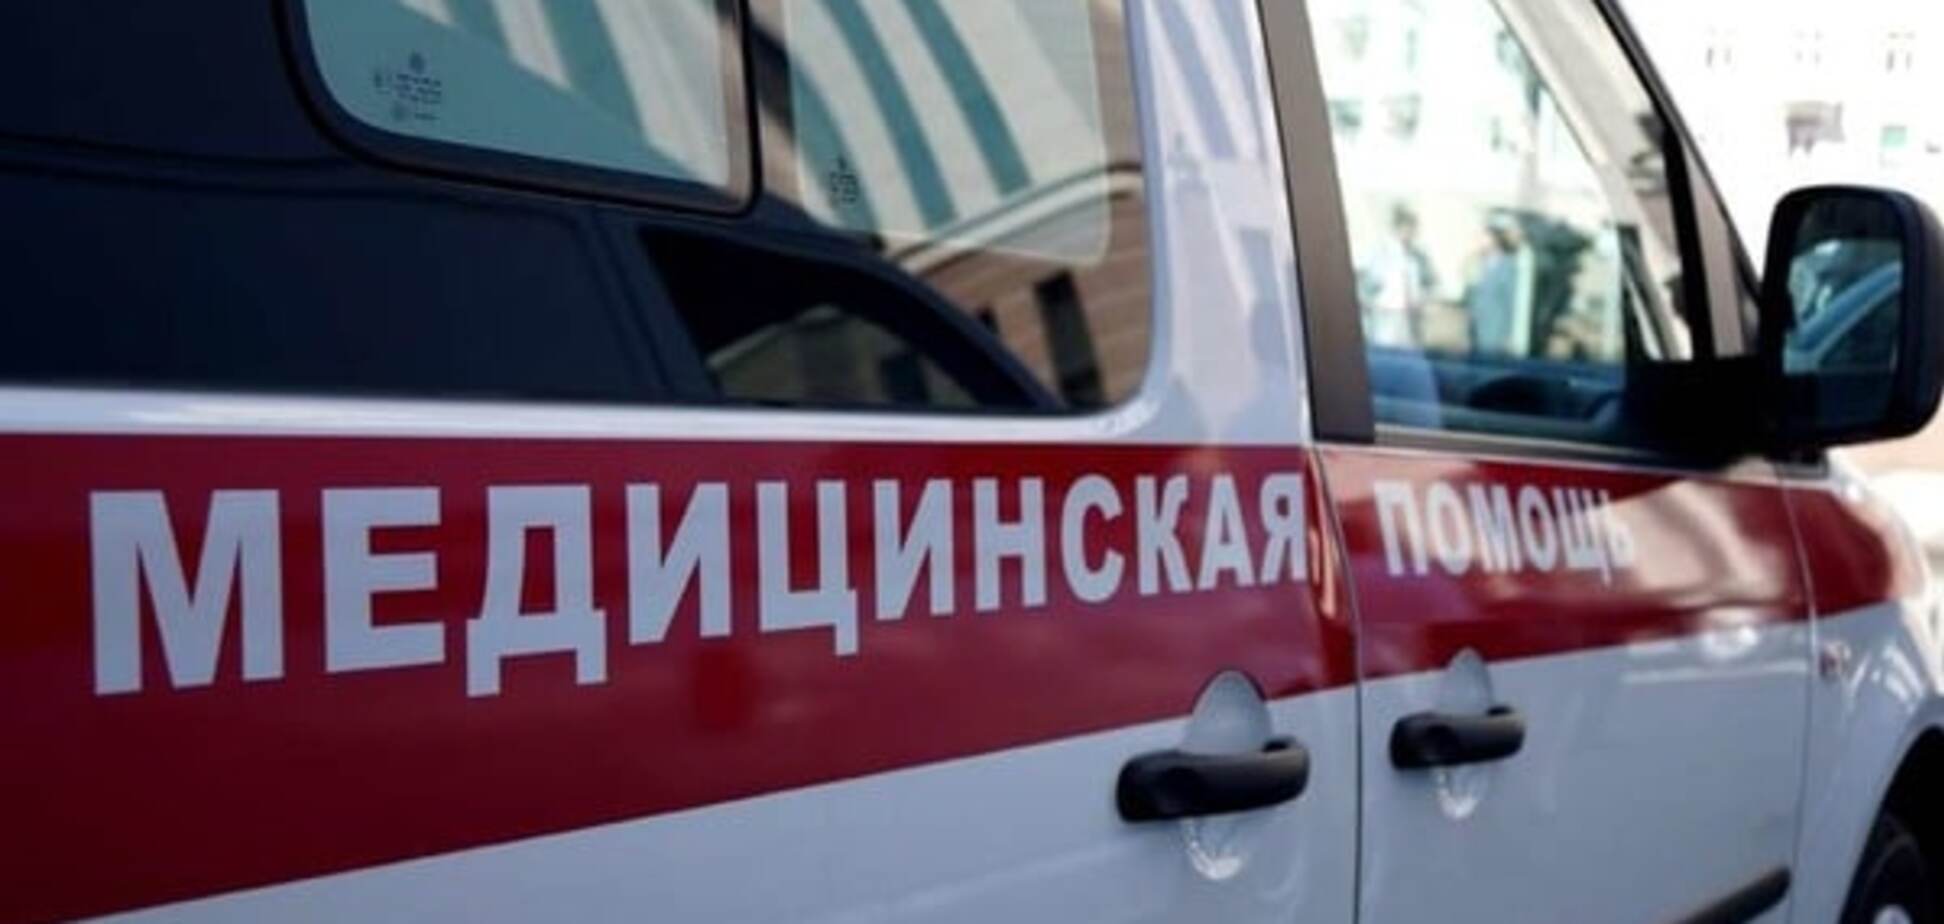 Украинец пострадал в масштабной аварии в России